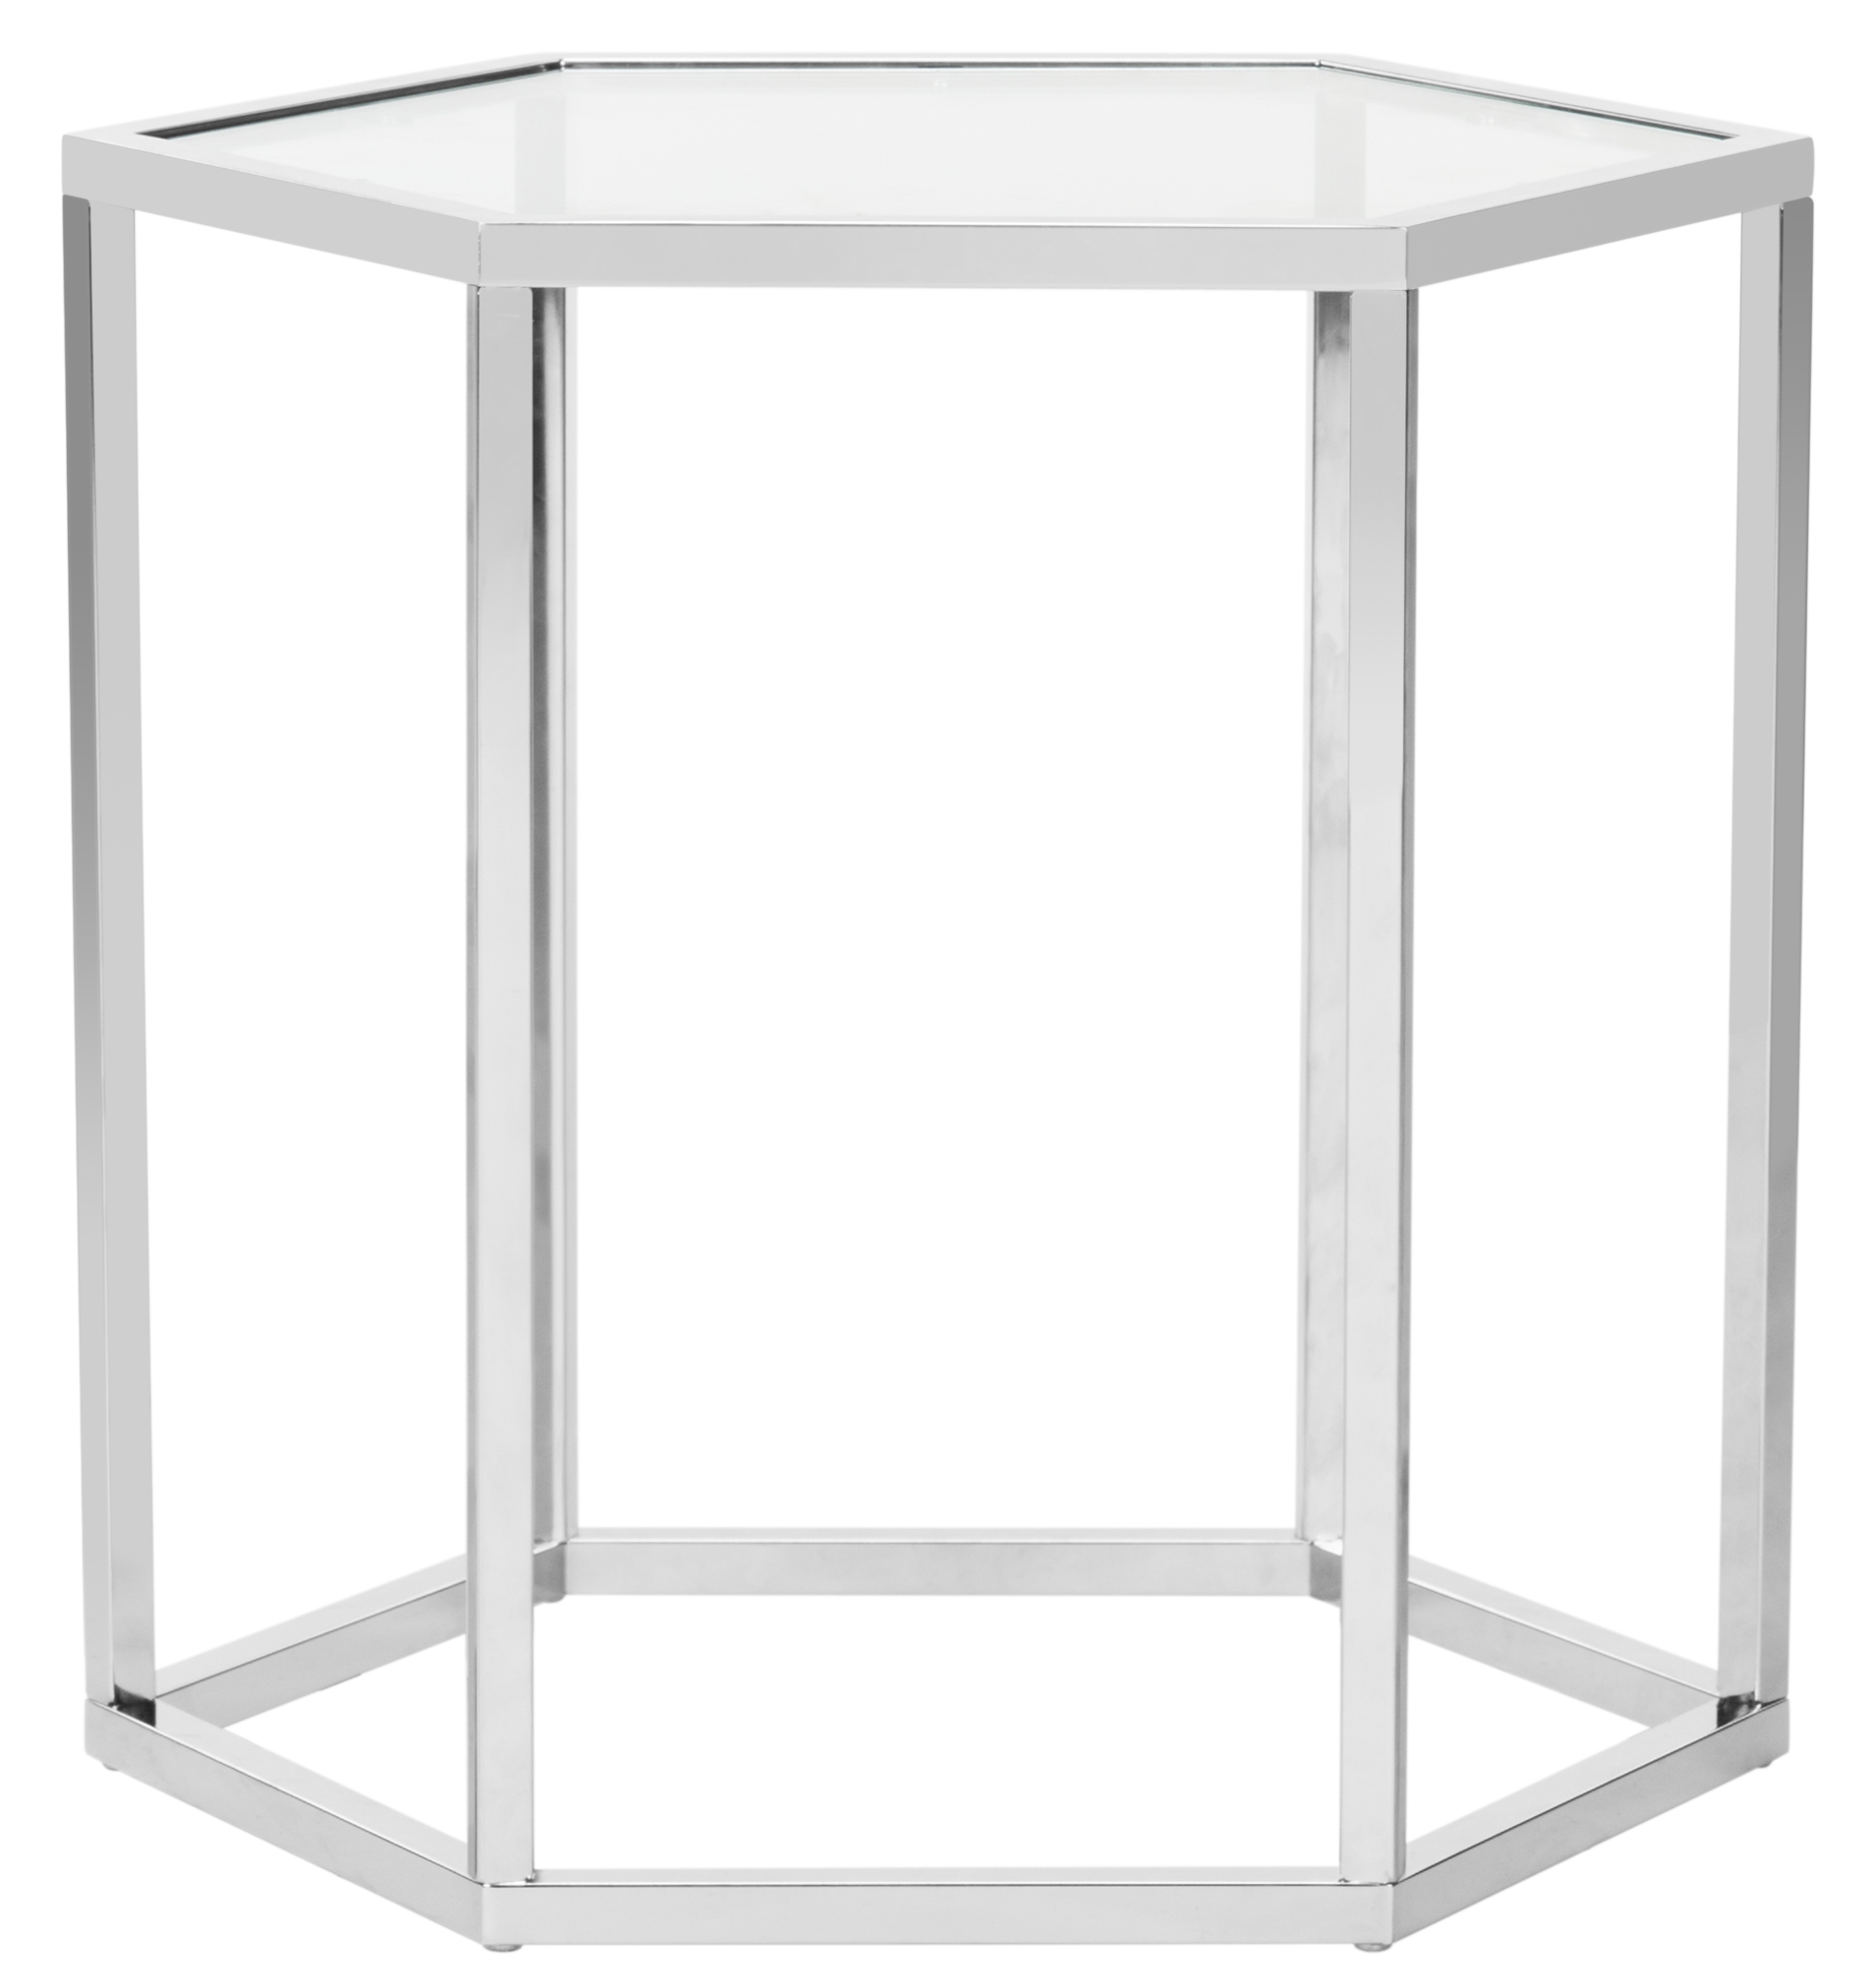 Teagan Glass End Table - Chrome - Arlo Home - Image 3